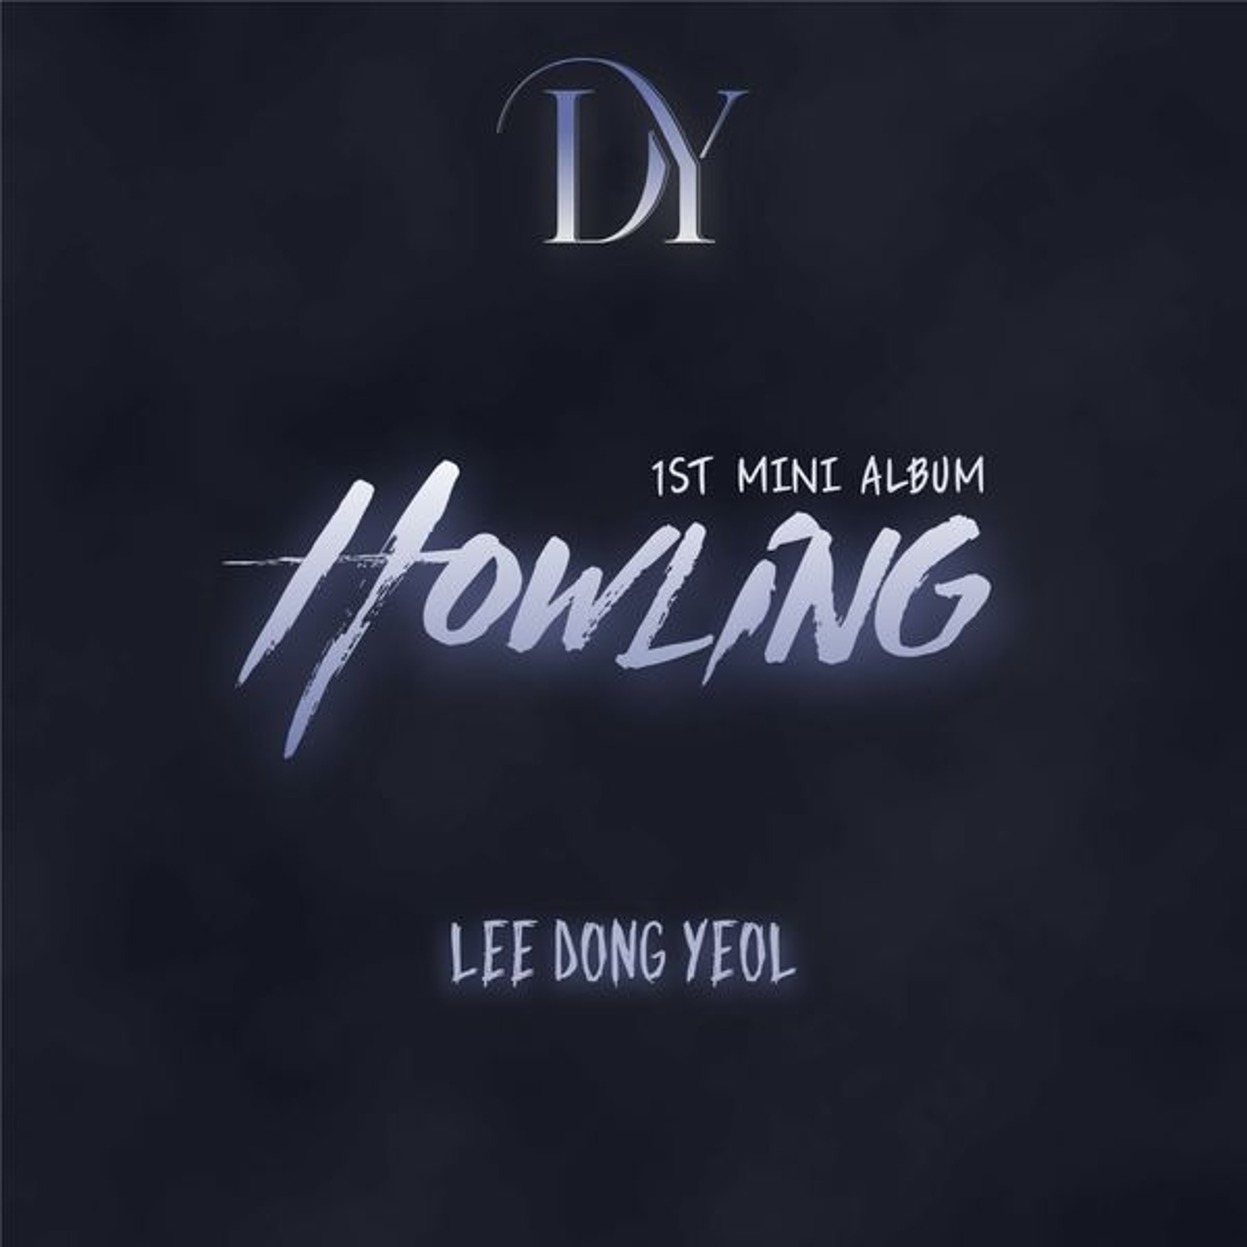 イ·ドンヨル (LEE DONG YEOL) - ミニアルバム1集 [Howling]